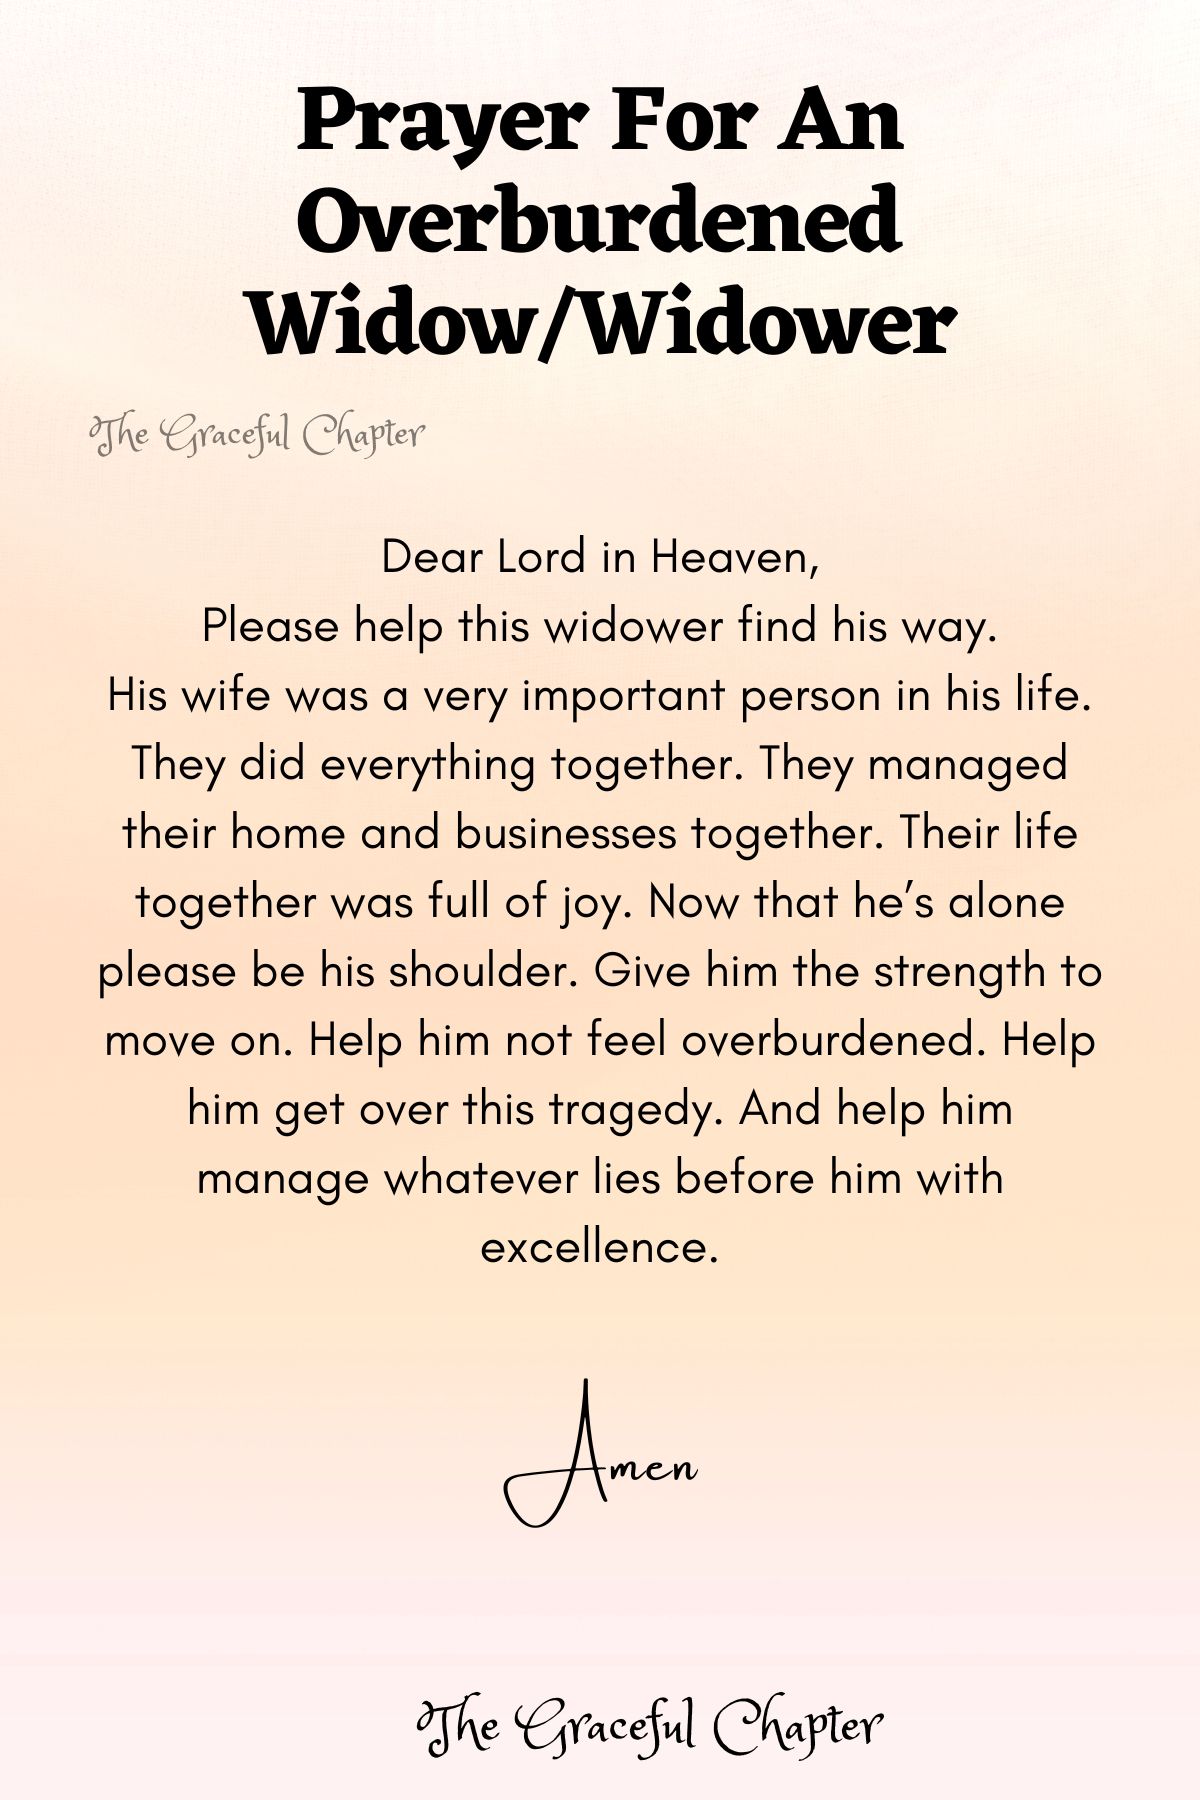 Prayer for an overburdened widow/widower